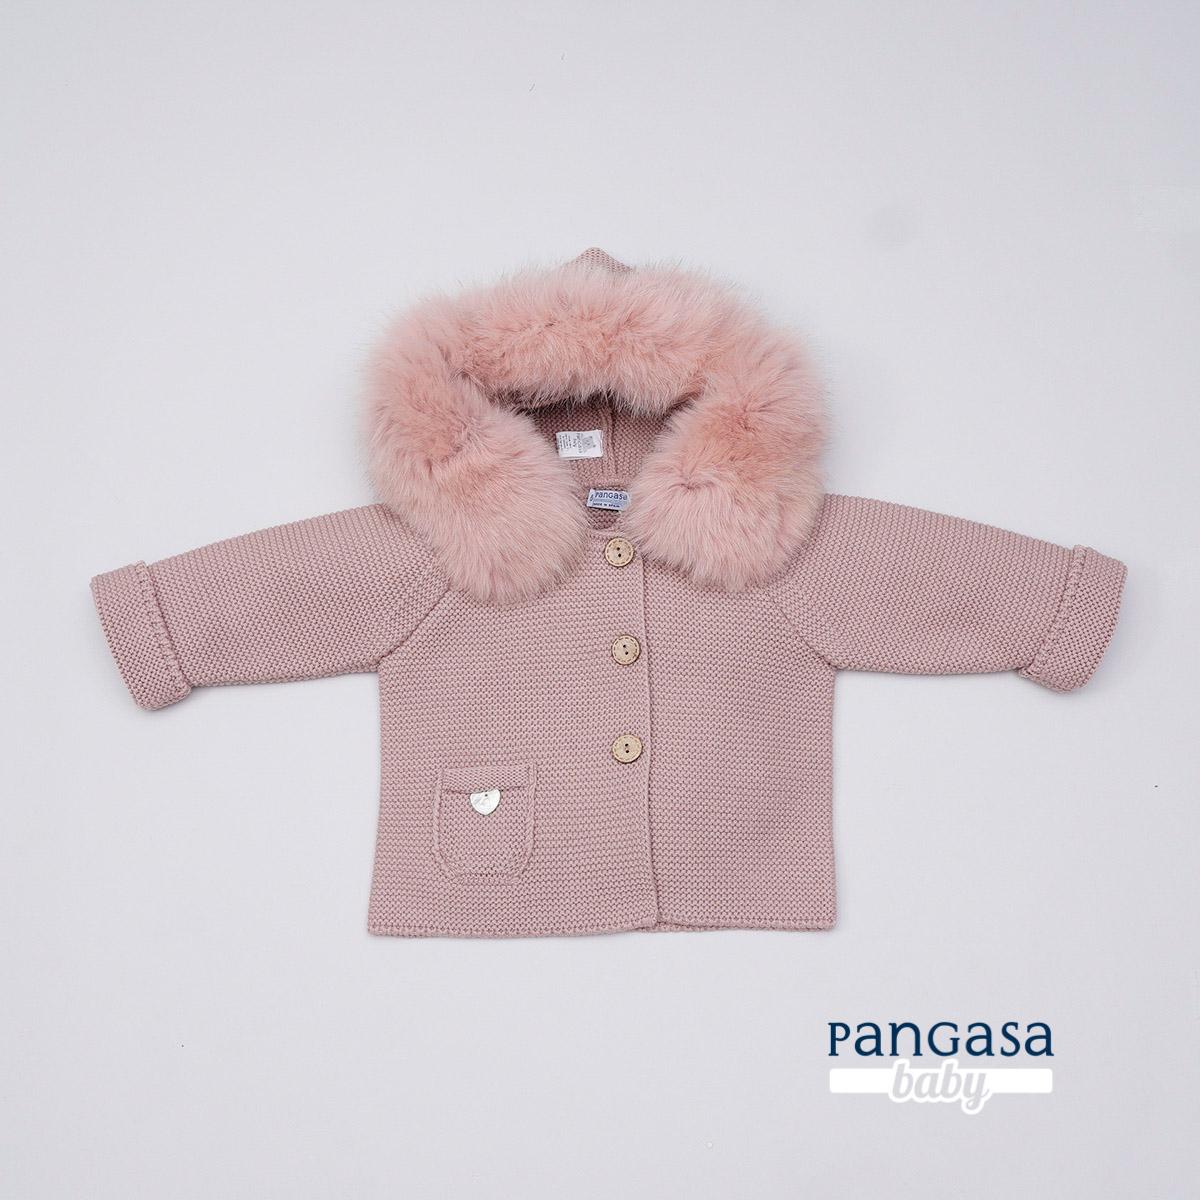 Pangasa - Trenka capucha pelo rosa vintage 1206009